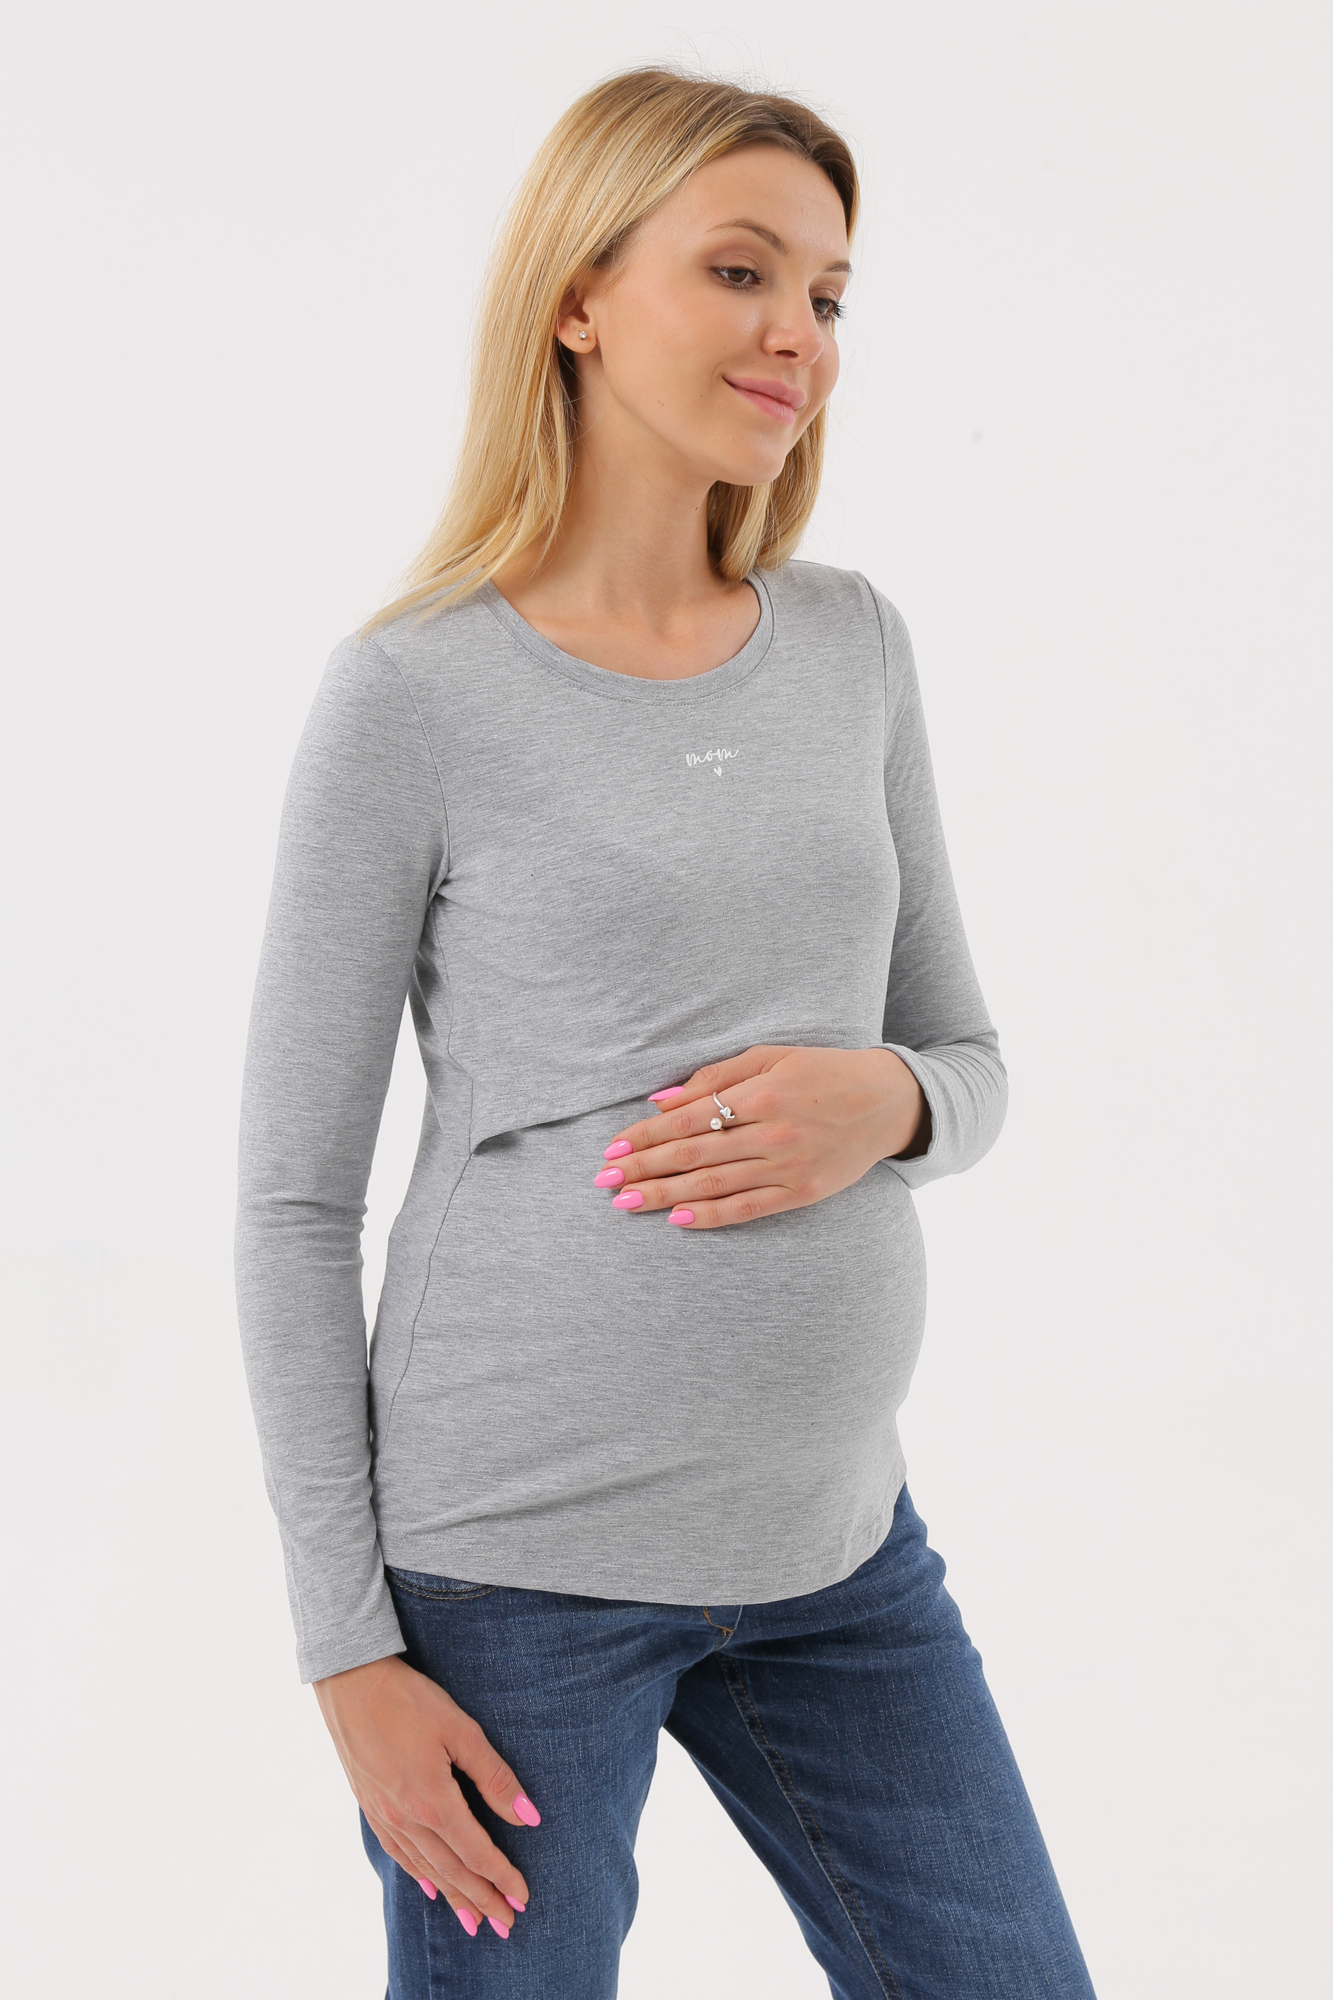 Лонгслив для беременных женский МВ7038 серый 52 RU Magica bellezza. Цвет: серый